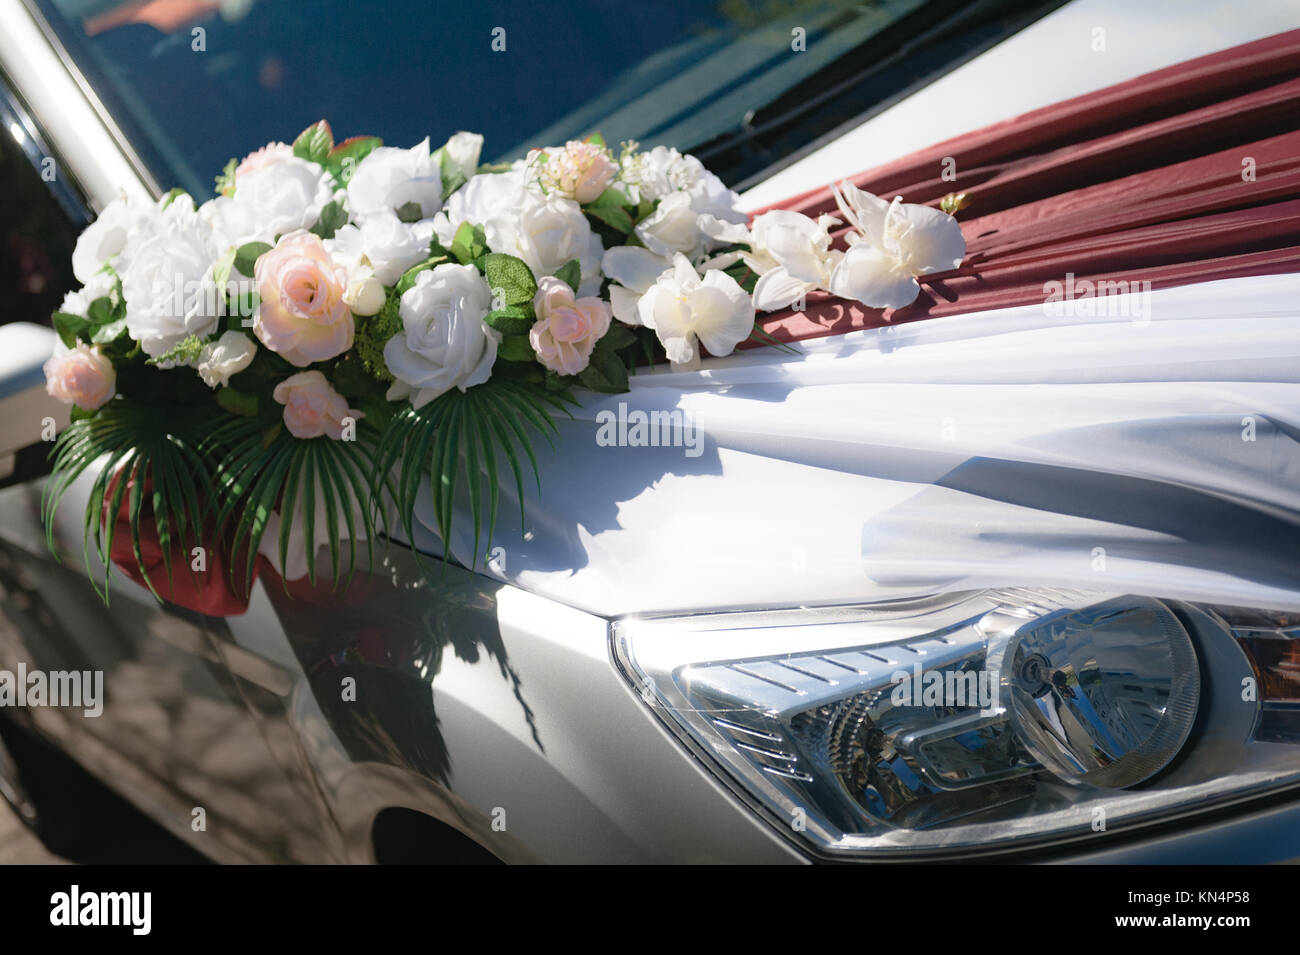 Hochzeit. Hochzeit Dekoration Hochzeit Auto. Luxus Hochzeit Auto mit Blumen  dekoriert. Just married Schild und Dosen angeschlossen Stockfotografie -  Alamy